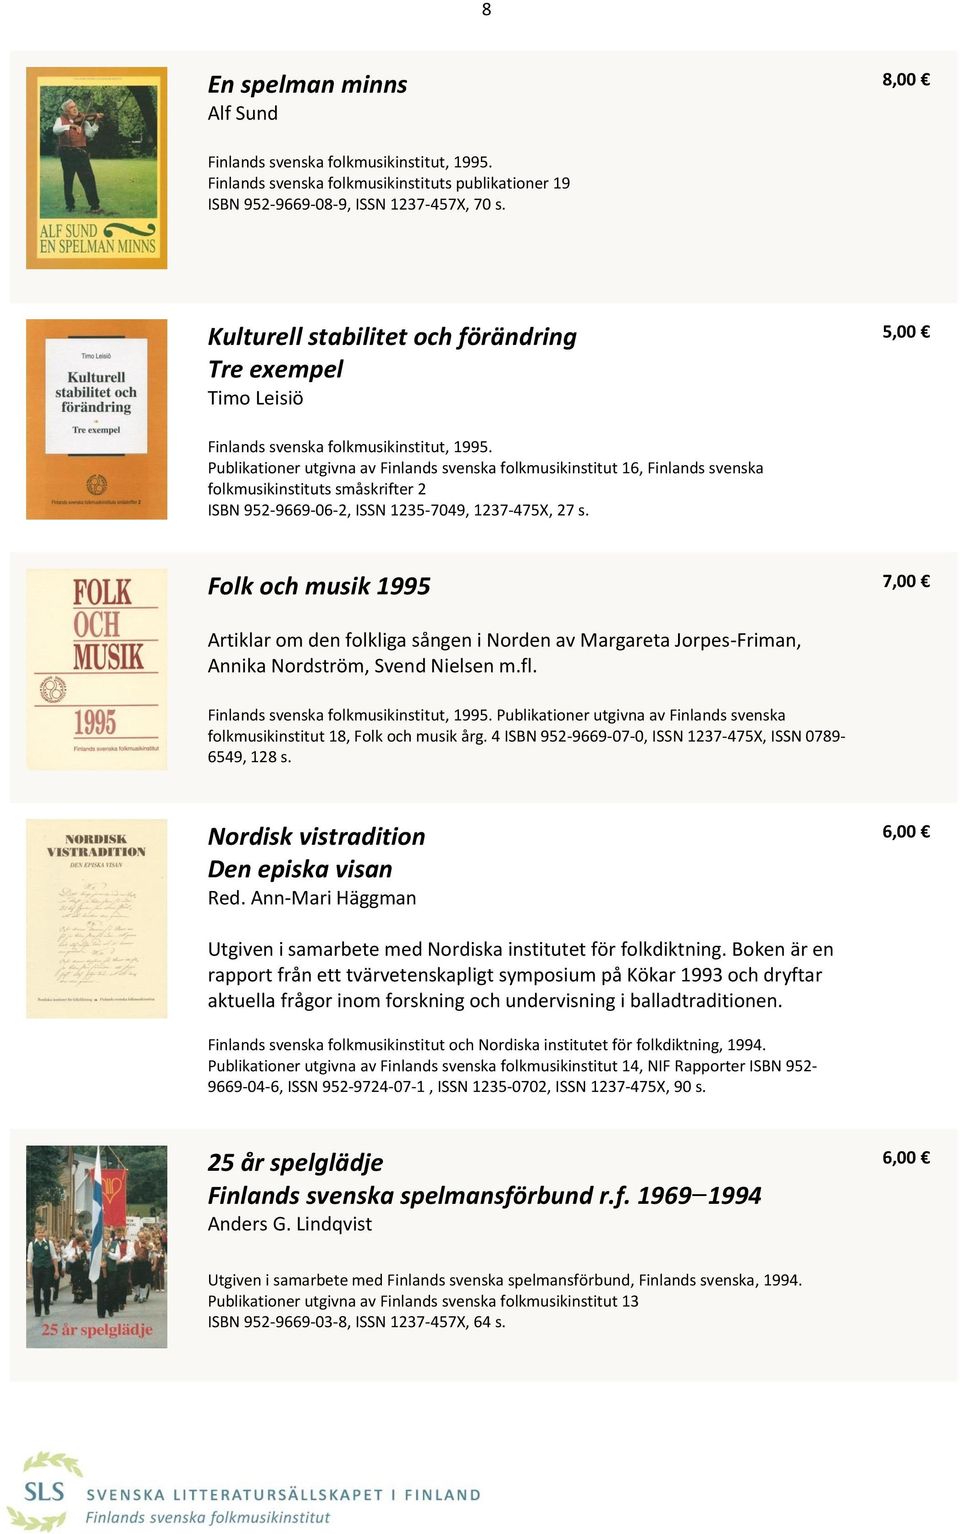 Publikationer utgivna av Finlands svenska folkmusikinstitut 16, Finlands svenska folkmusikinstituts småskrifter 2 ISBN 952-9669-06-2, ISSN 1235-7049, 1237-475X, 27 s.